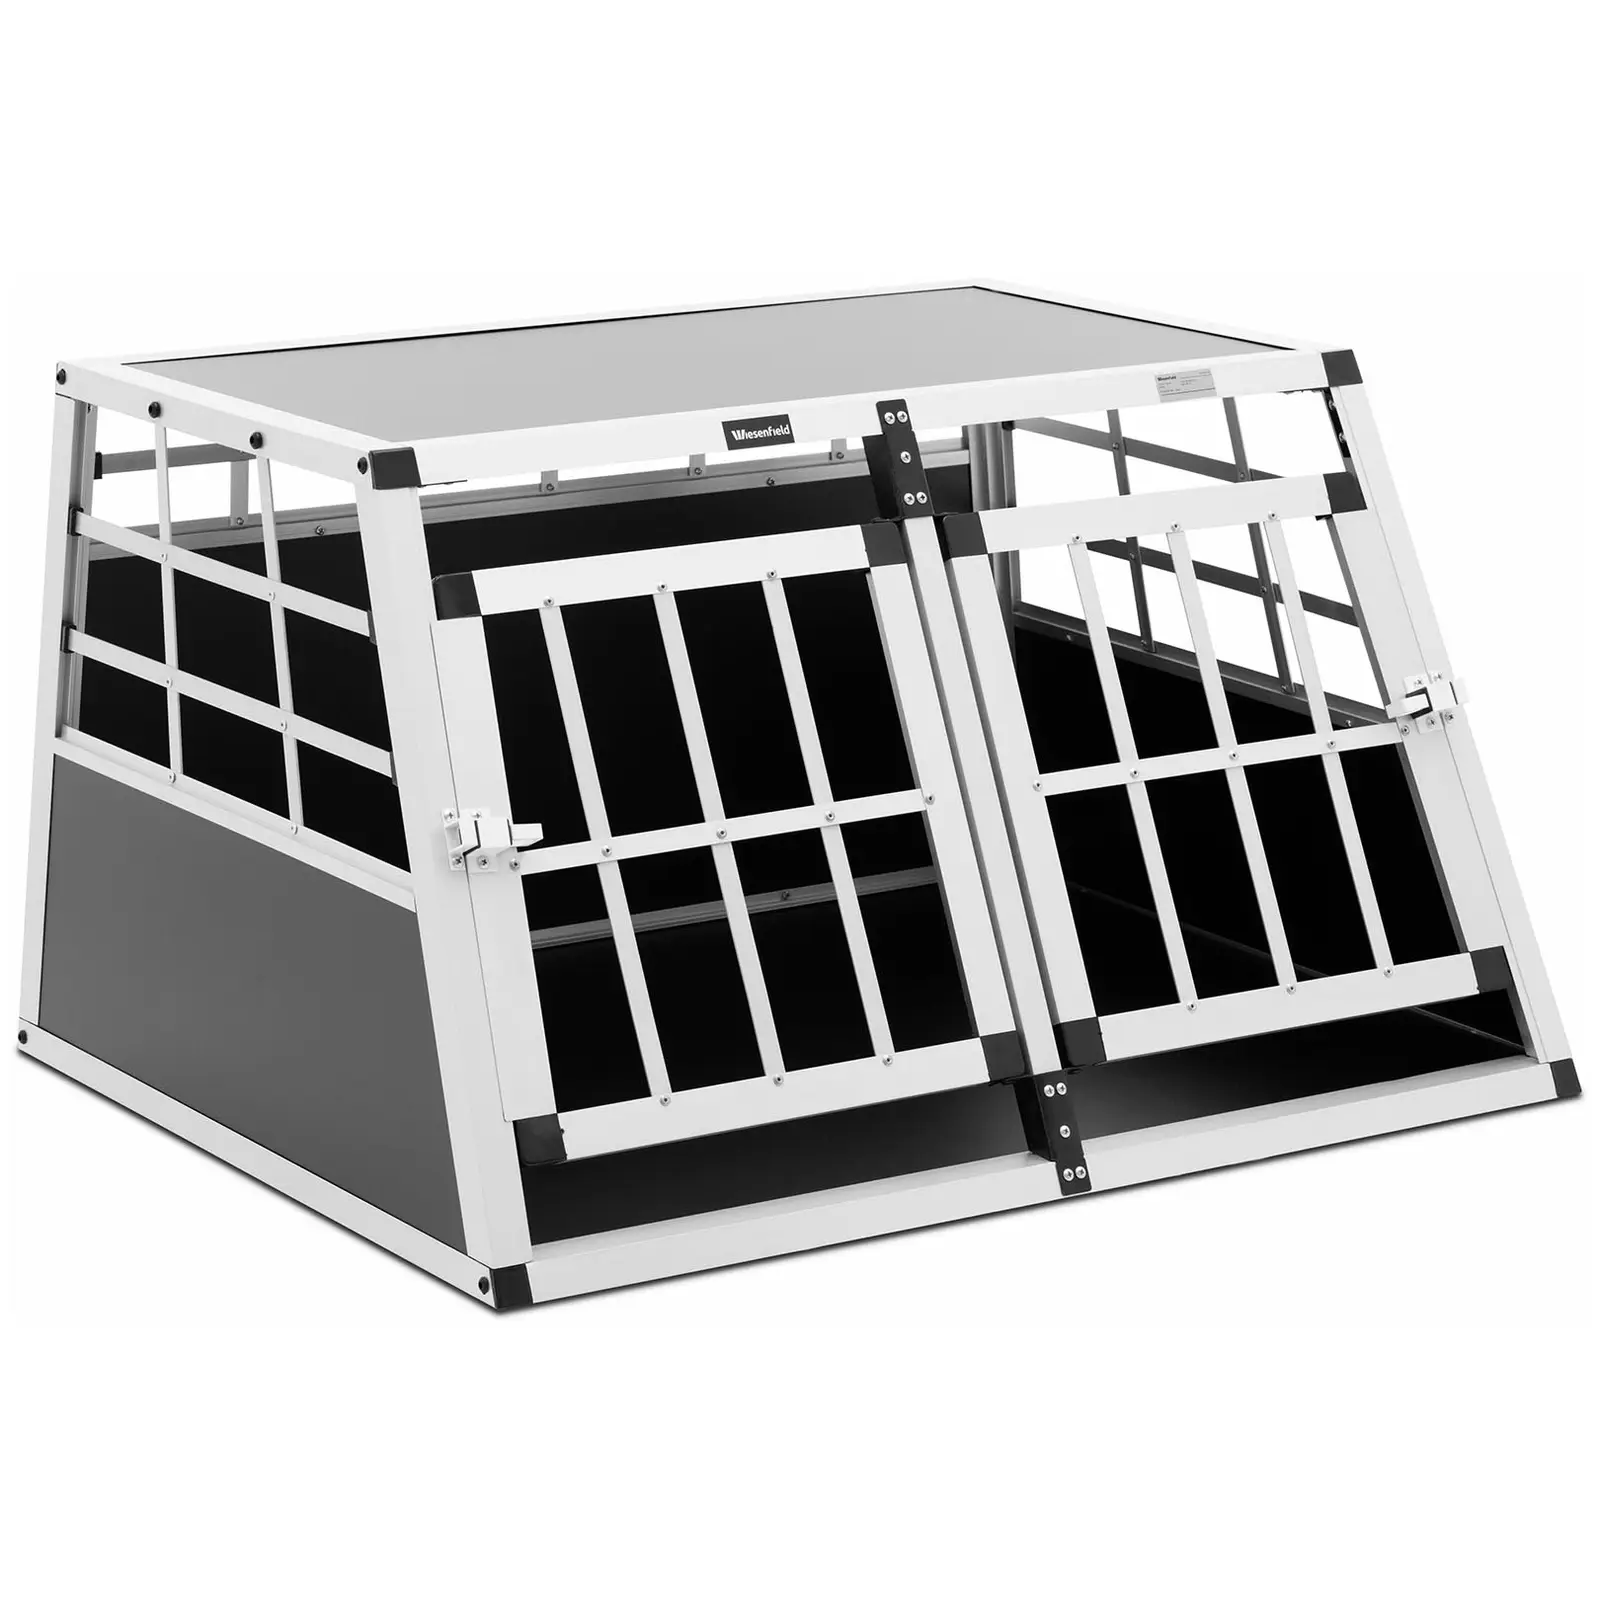 Κλουβί σκύλου - Αλουμίνιο - Τραπεζοειδές σχήμα - 69 x 90 x 50 cm